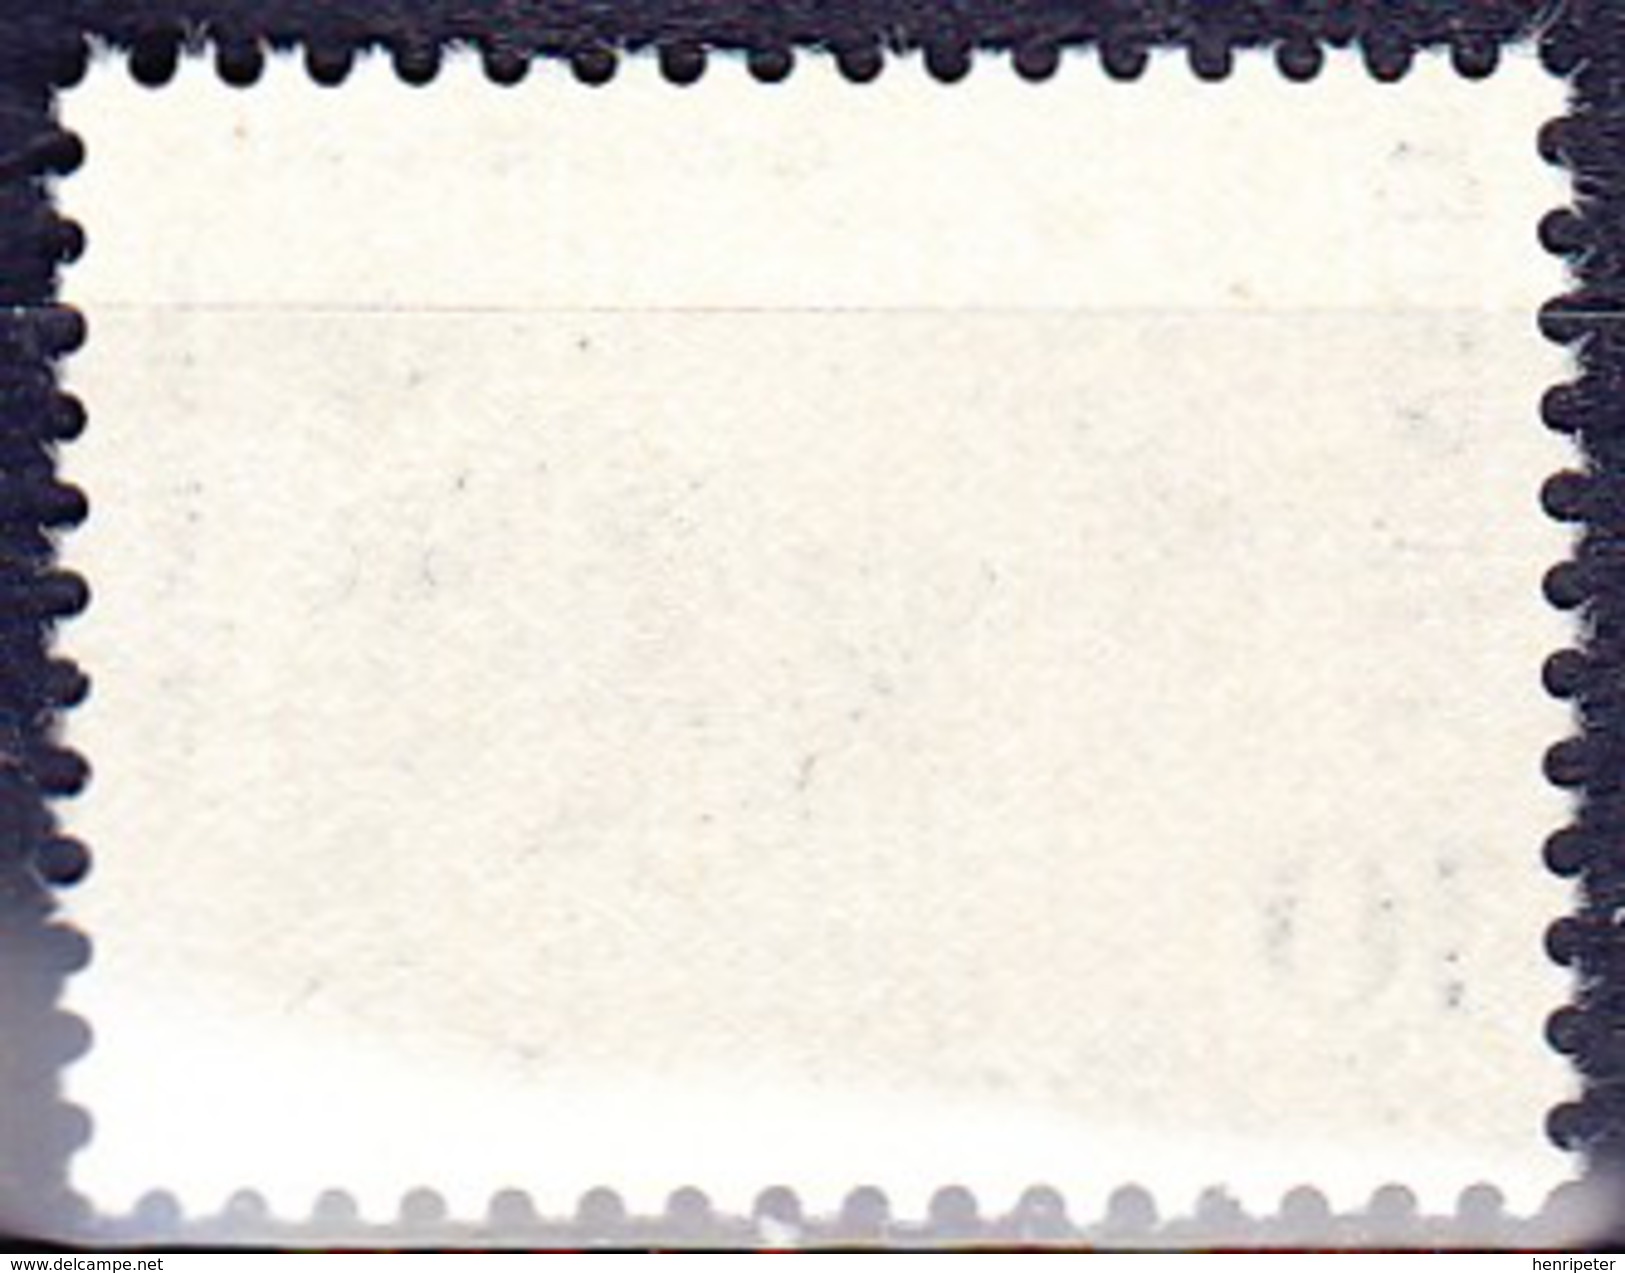 Timbre-poste Gommé Neuf** - Faune Animaux Nordiques Chien Islandais - N° 503 (Yvert) - République D'Islande 1980 - Ongebruikt